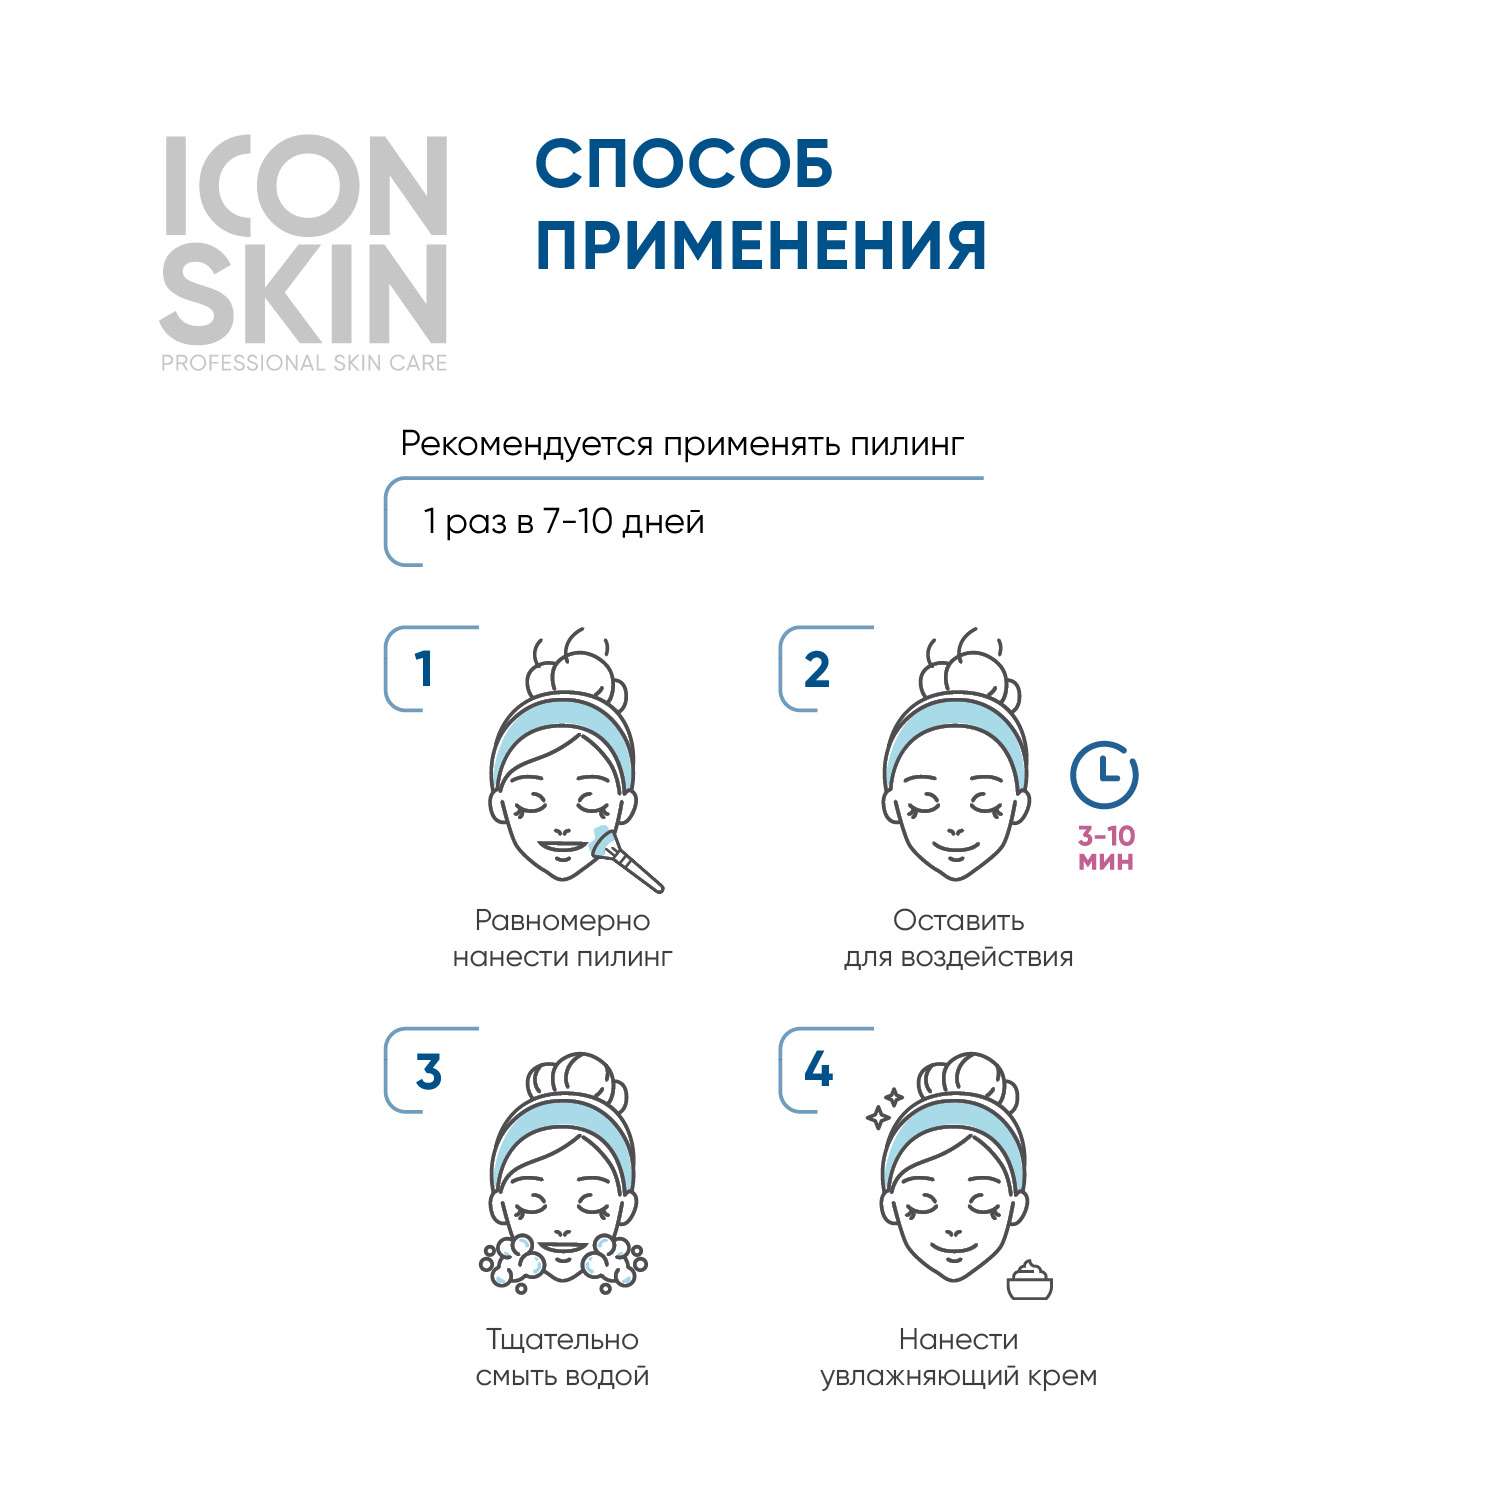 Пилинг ICON SKIN для проблемной кожи 18% 30 мл - фото 5